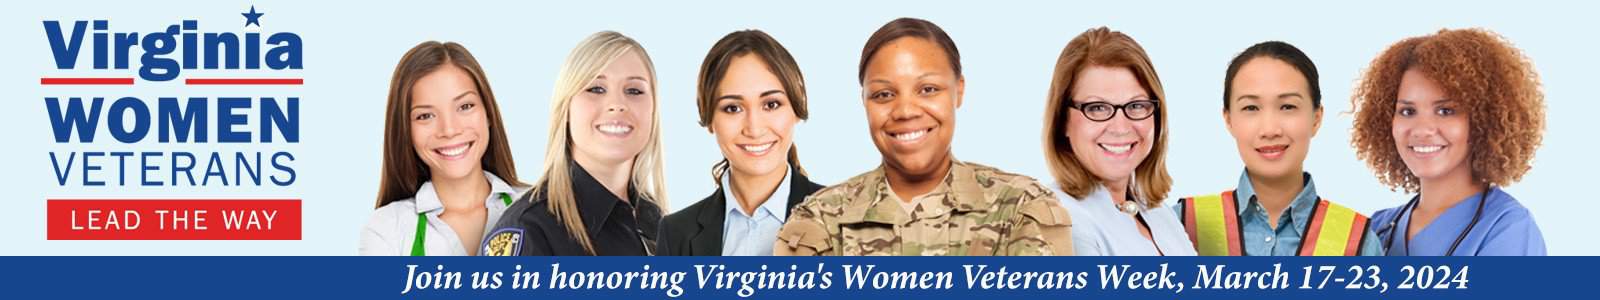 VirginiaWomenVeterans Banner 3 1 8 15